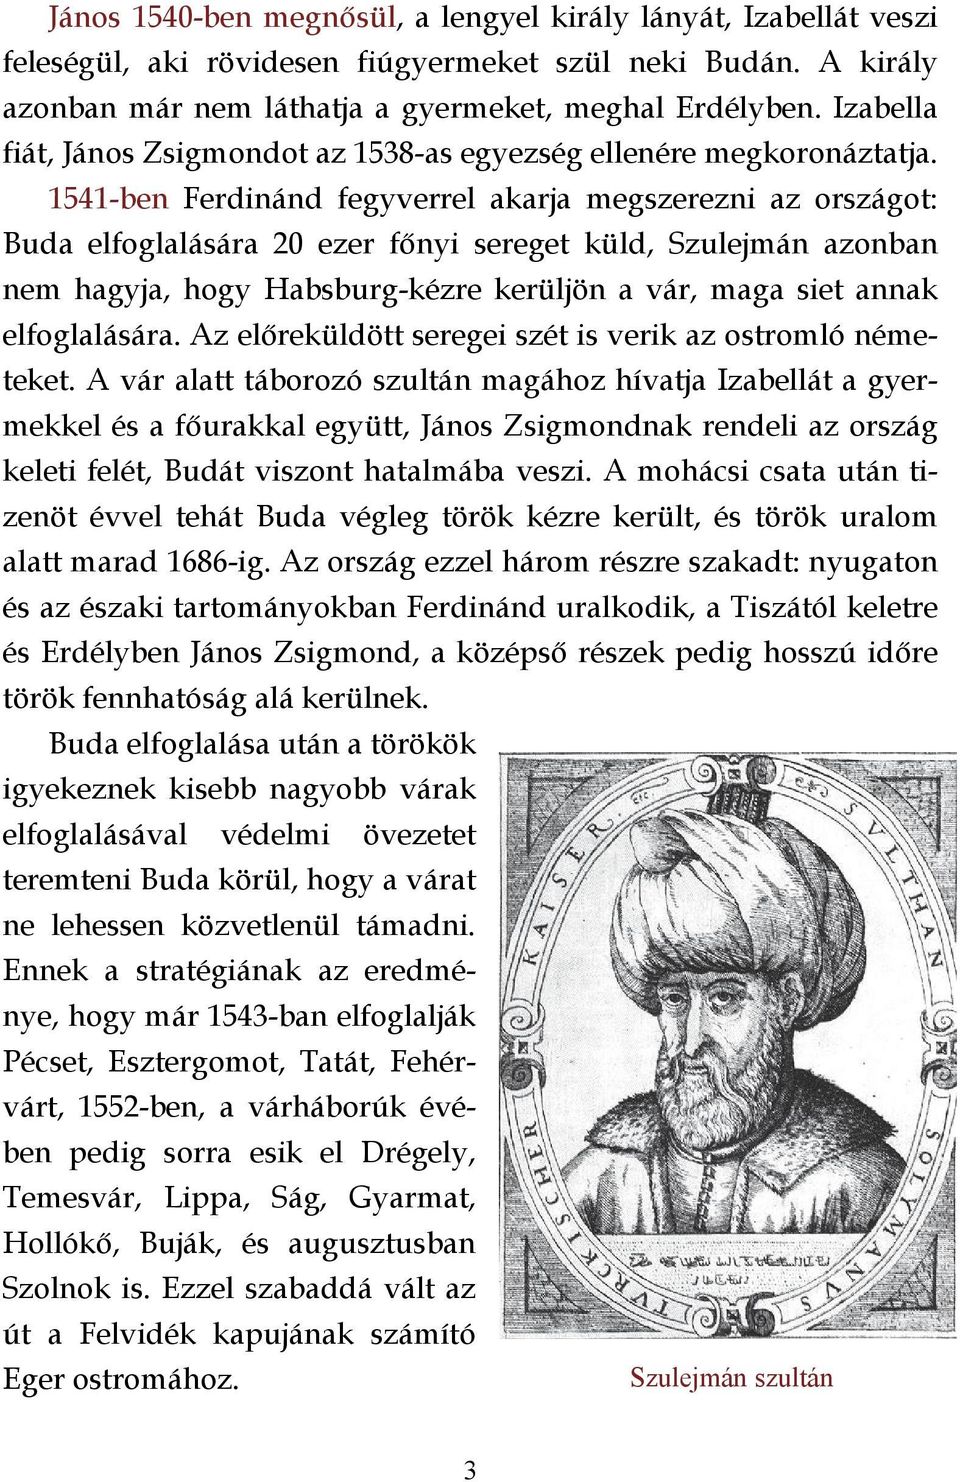 1541-ben Ferdinánd fegyverrel akarja megszerezni az országot: Buda elfoglalására 20 ezer főnyi sereget küld, Szulejmán azonban nem hagyja, hogy Habsburg-kézre kerüljön a vár, maga siet annak